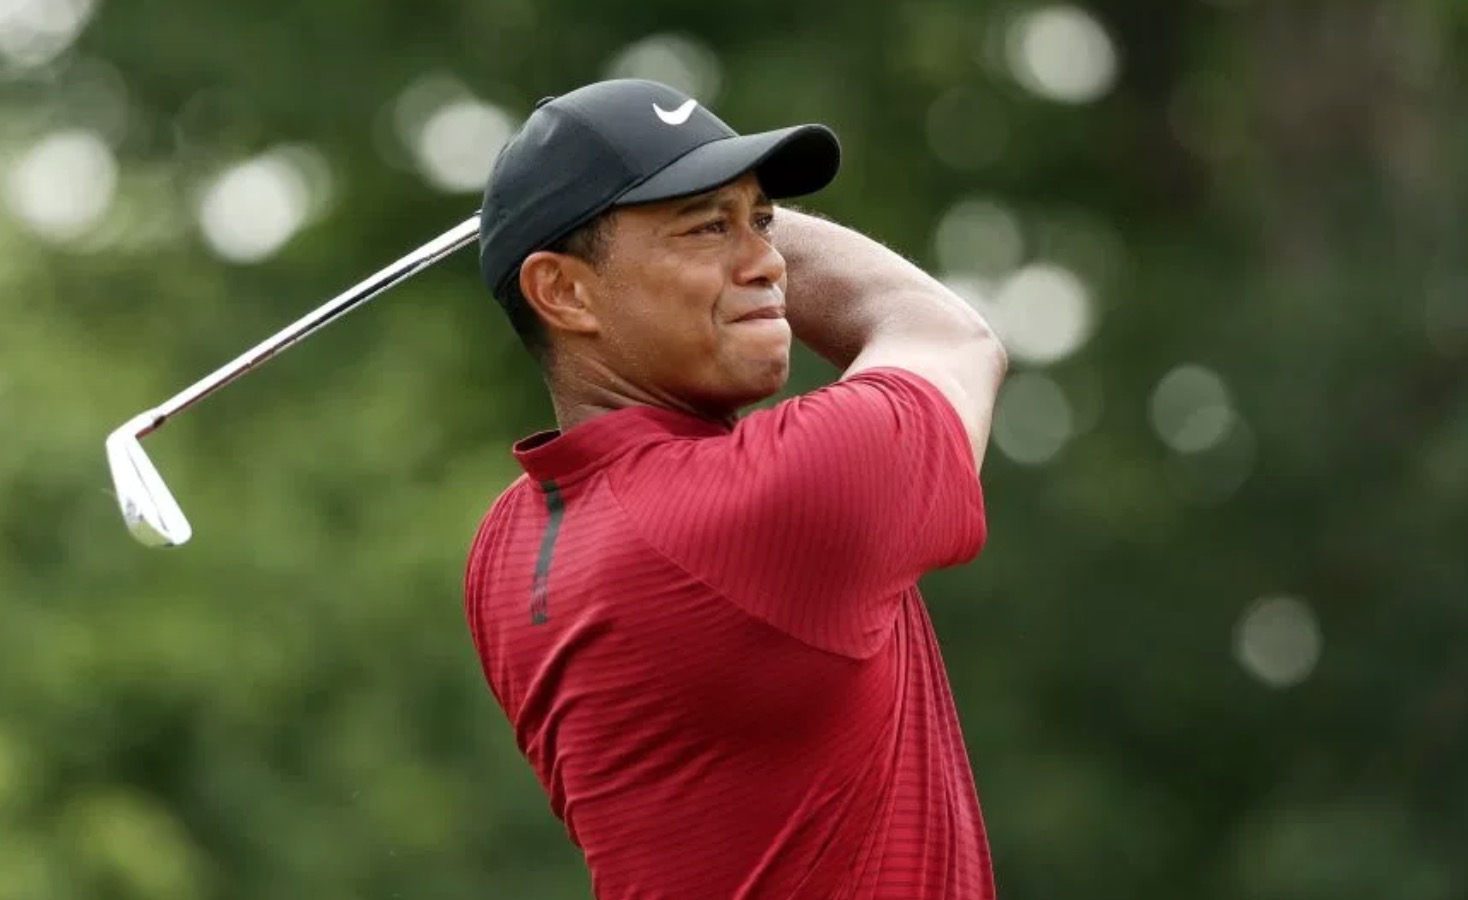   Tiger Woods  image - Golfweek 